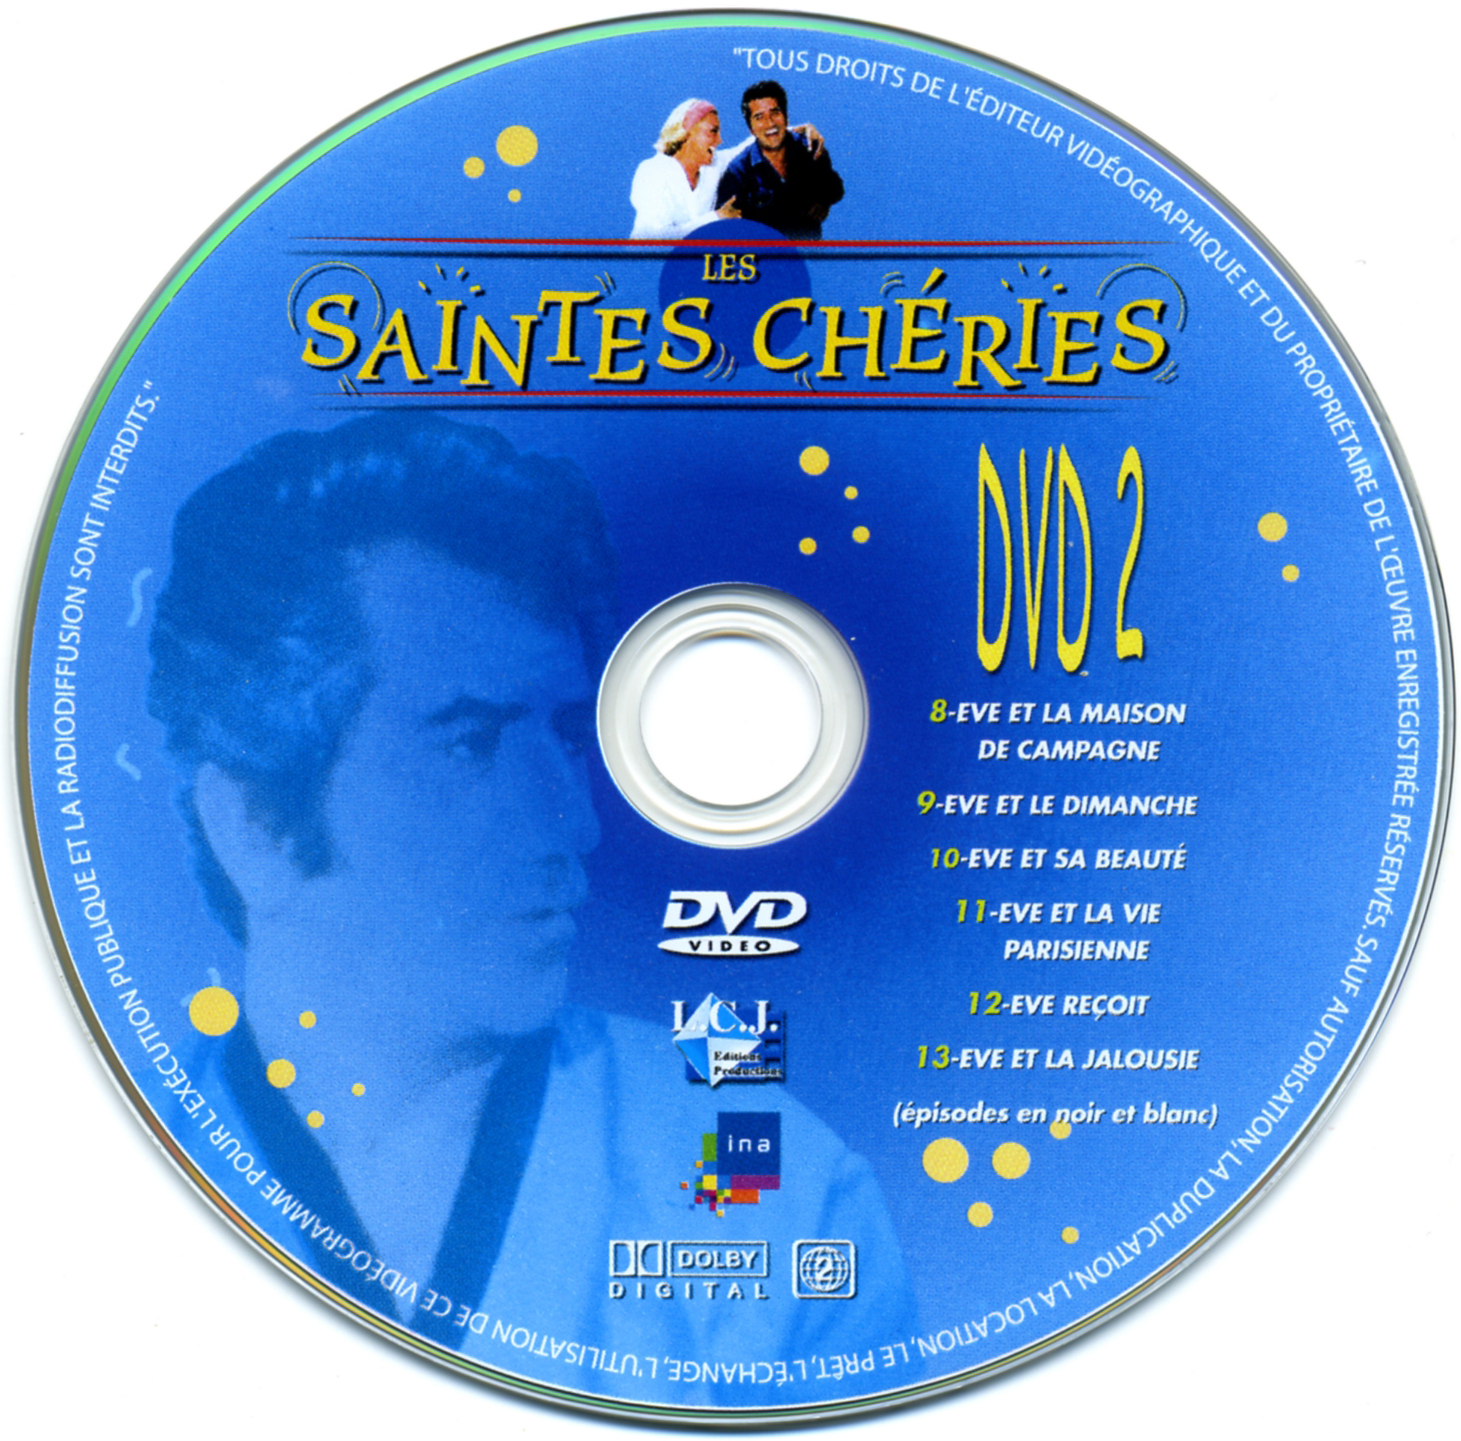 Les Saintes Cheries DISC 2